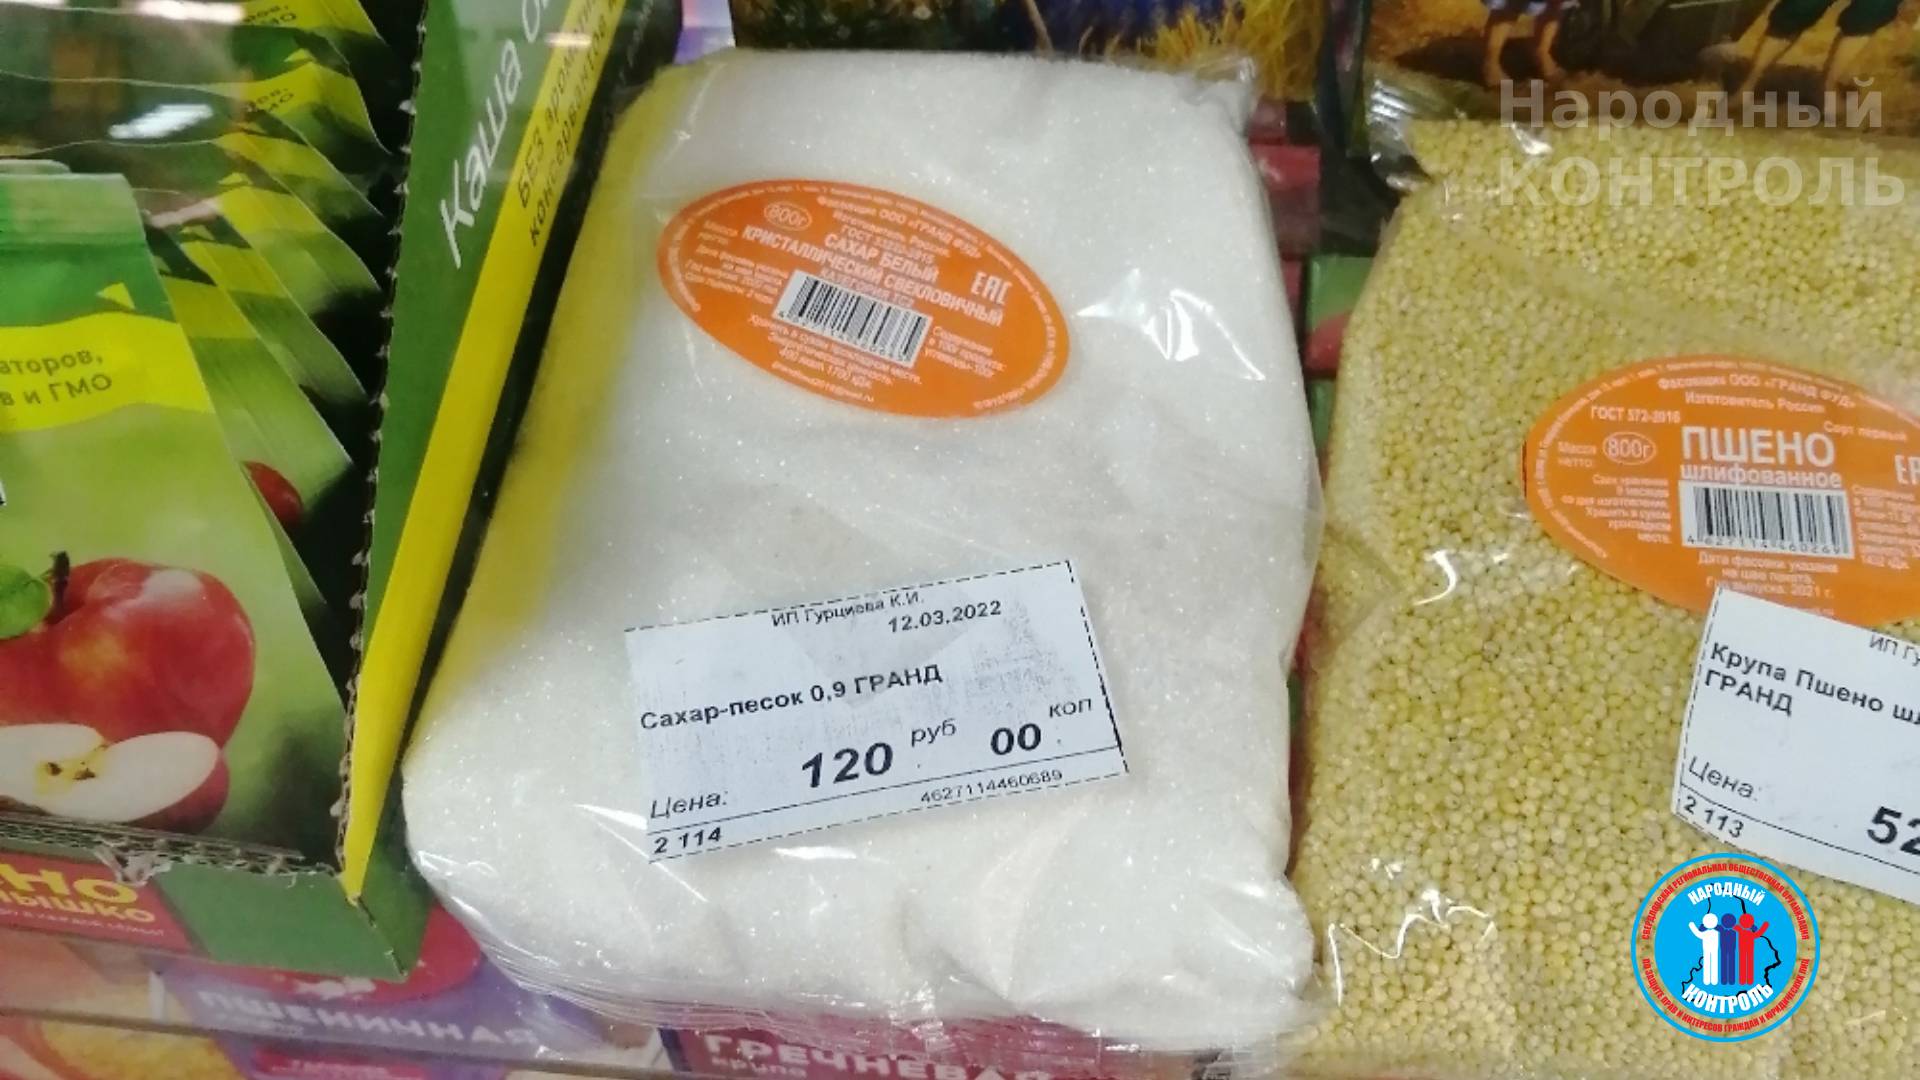 Повышение цен на сахар и гречу в Серпухове